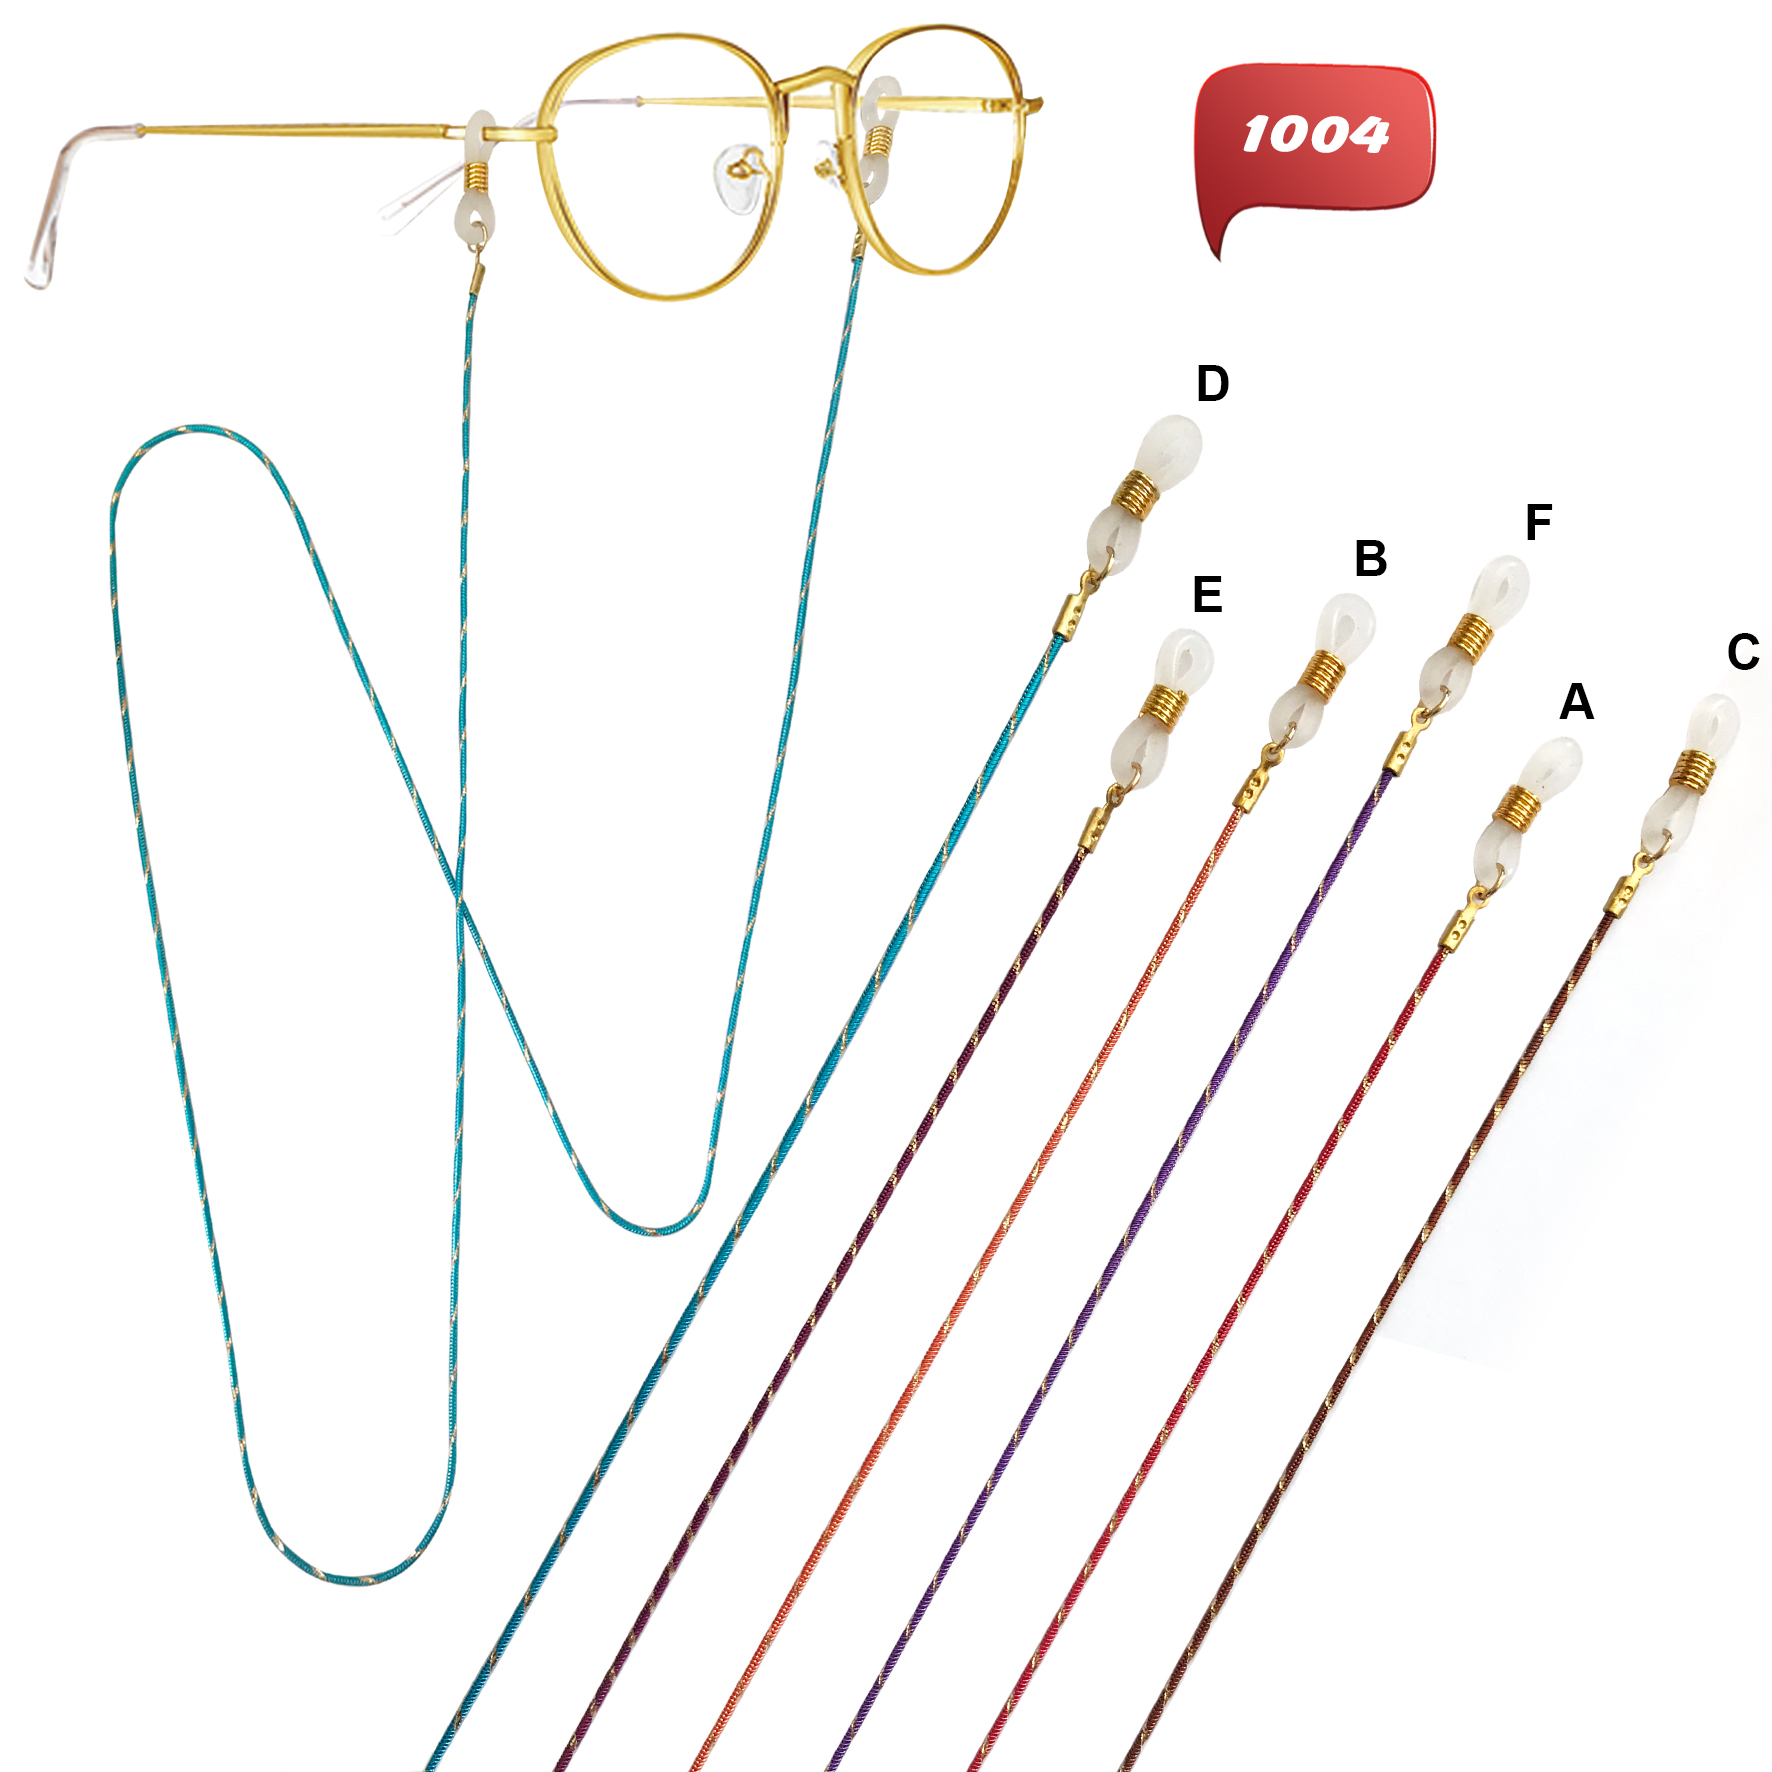 Brillenkette aus lackiertem Metall in leuchtenden Farben